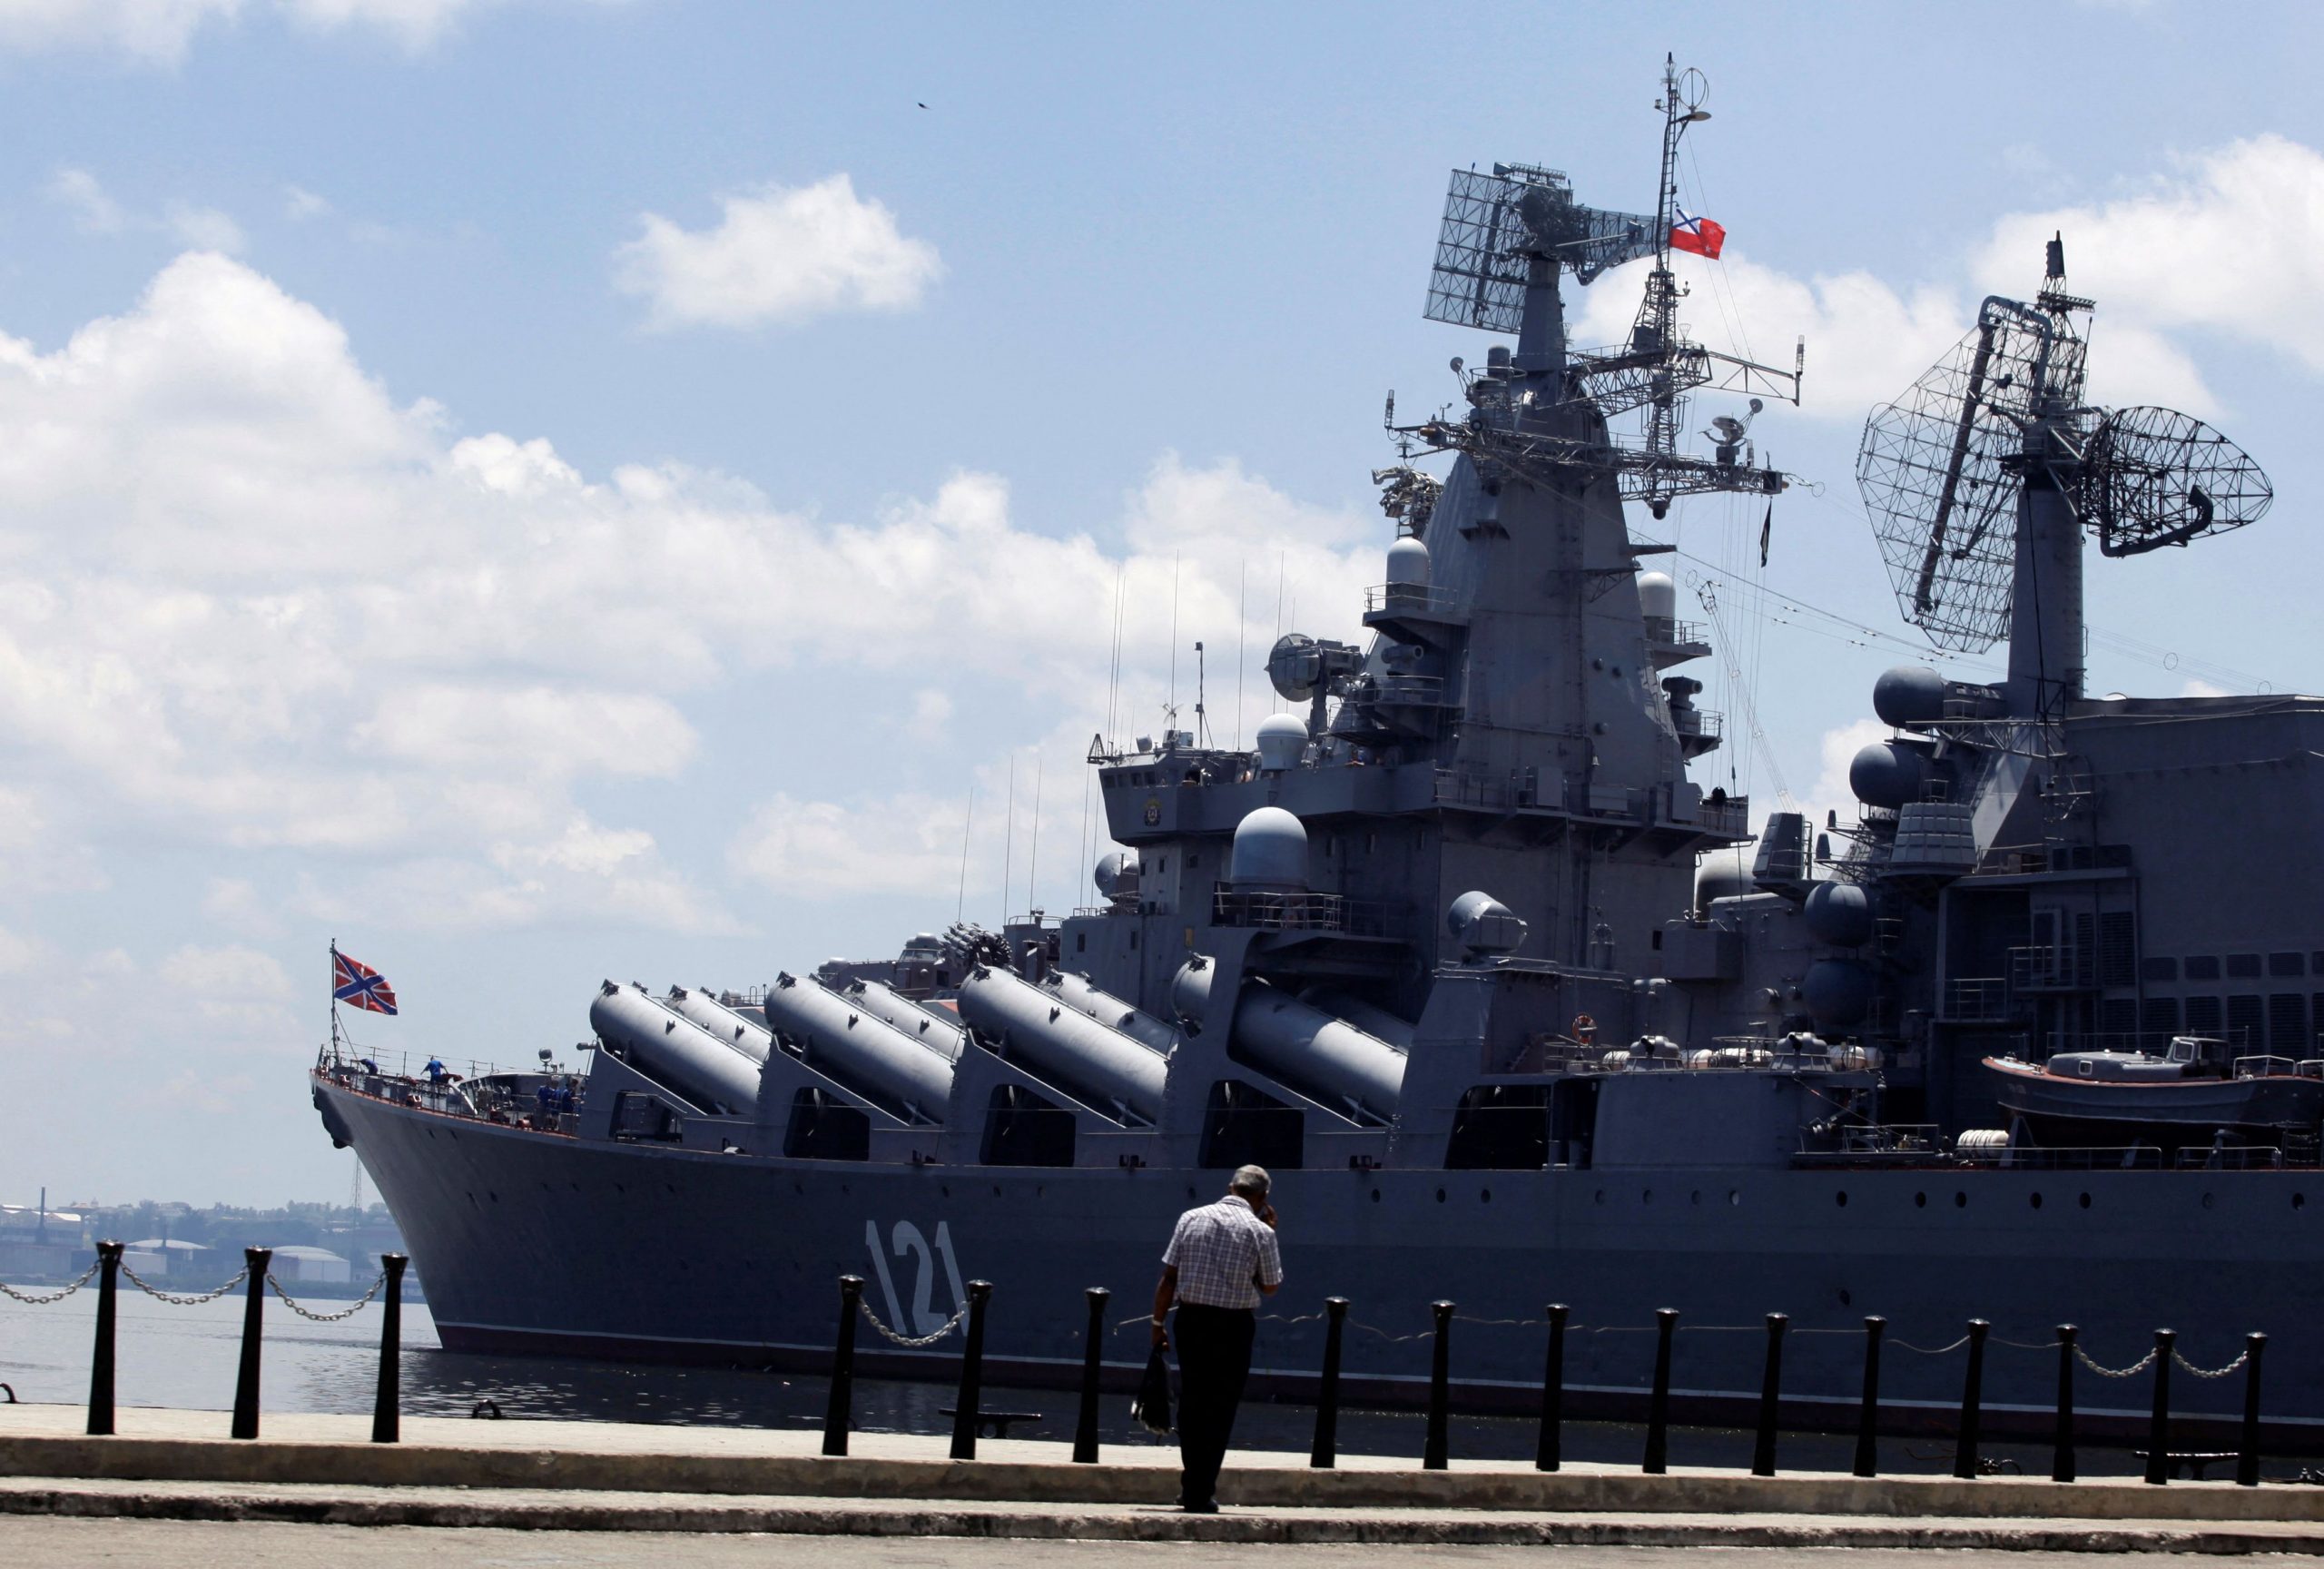 El "Moskva" atracado en el puerto de La Habana en agosto de 2013. Foto: Desmond Boylan/ Archivo de Reuters.